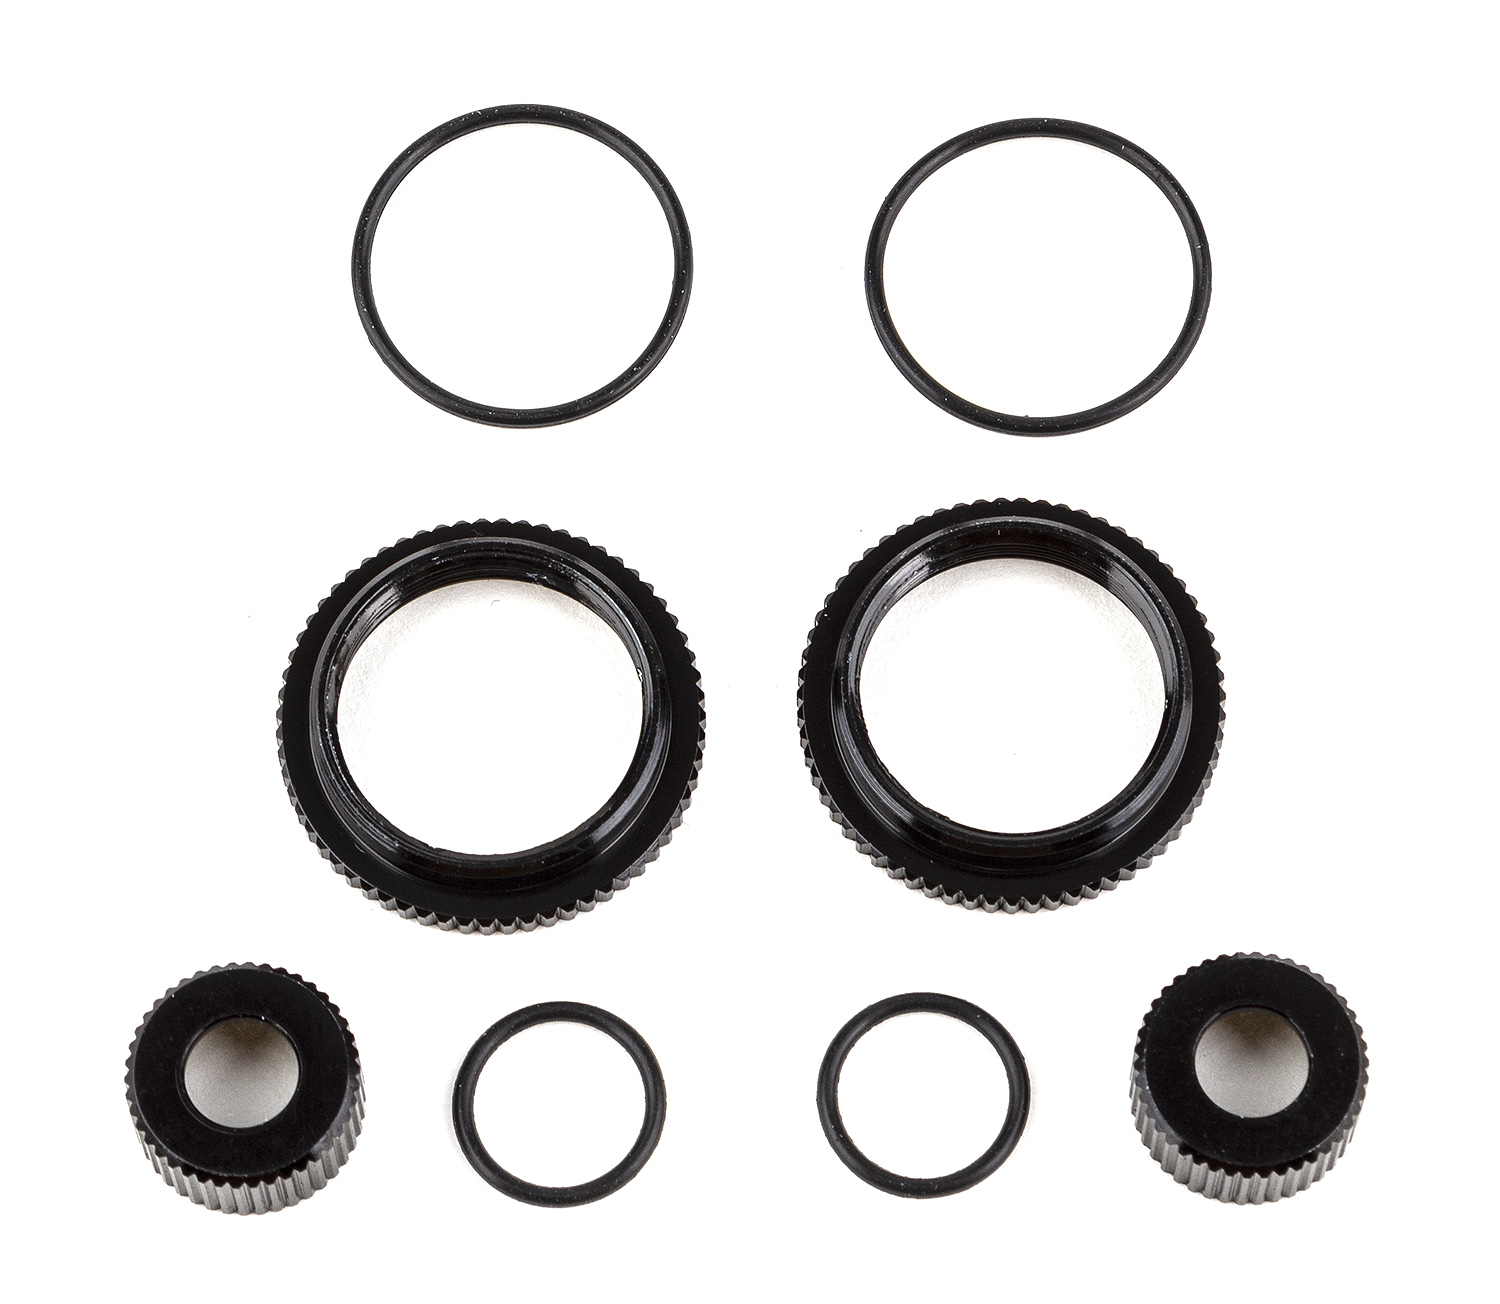 13mm Shock Collar and Seal Retainer Set, black aluminum